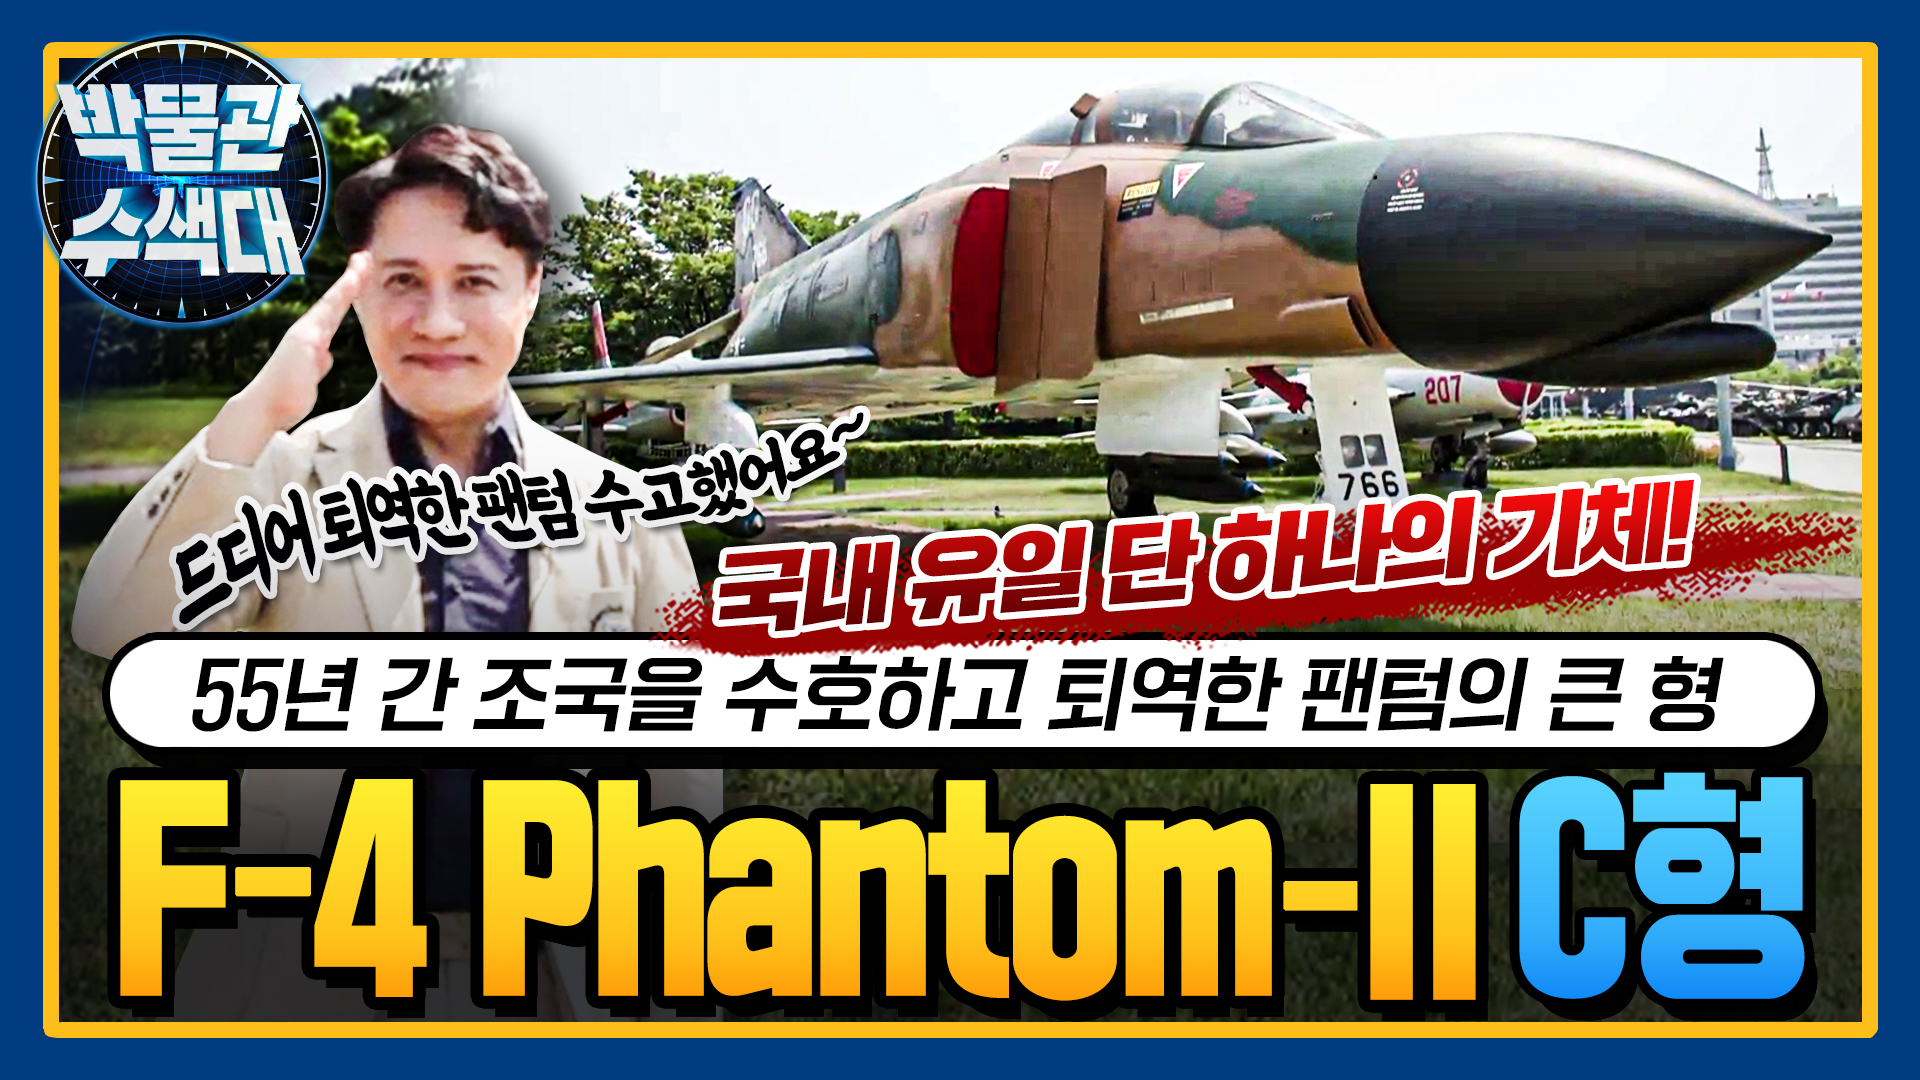 55년 간 한국의 영공을 지킨 팬텀의 큰형! 전국 유일한 단 1대!  ☆F-4 Phantom-II C형!★ I 국방홍보원